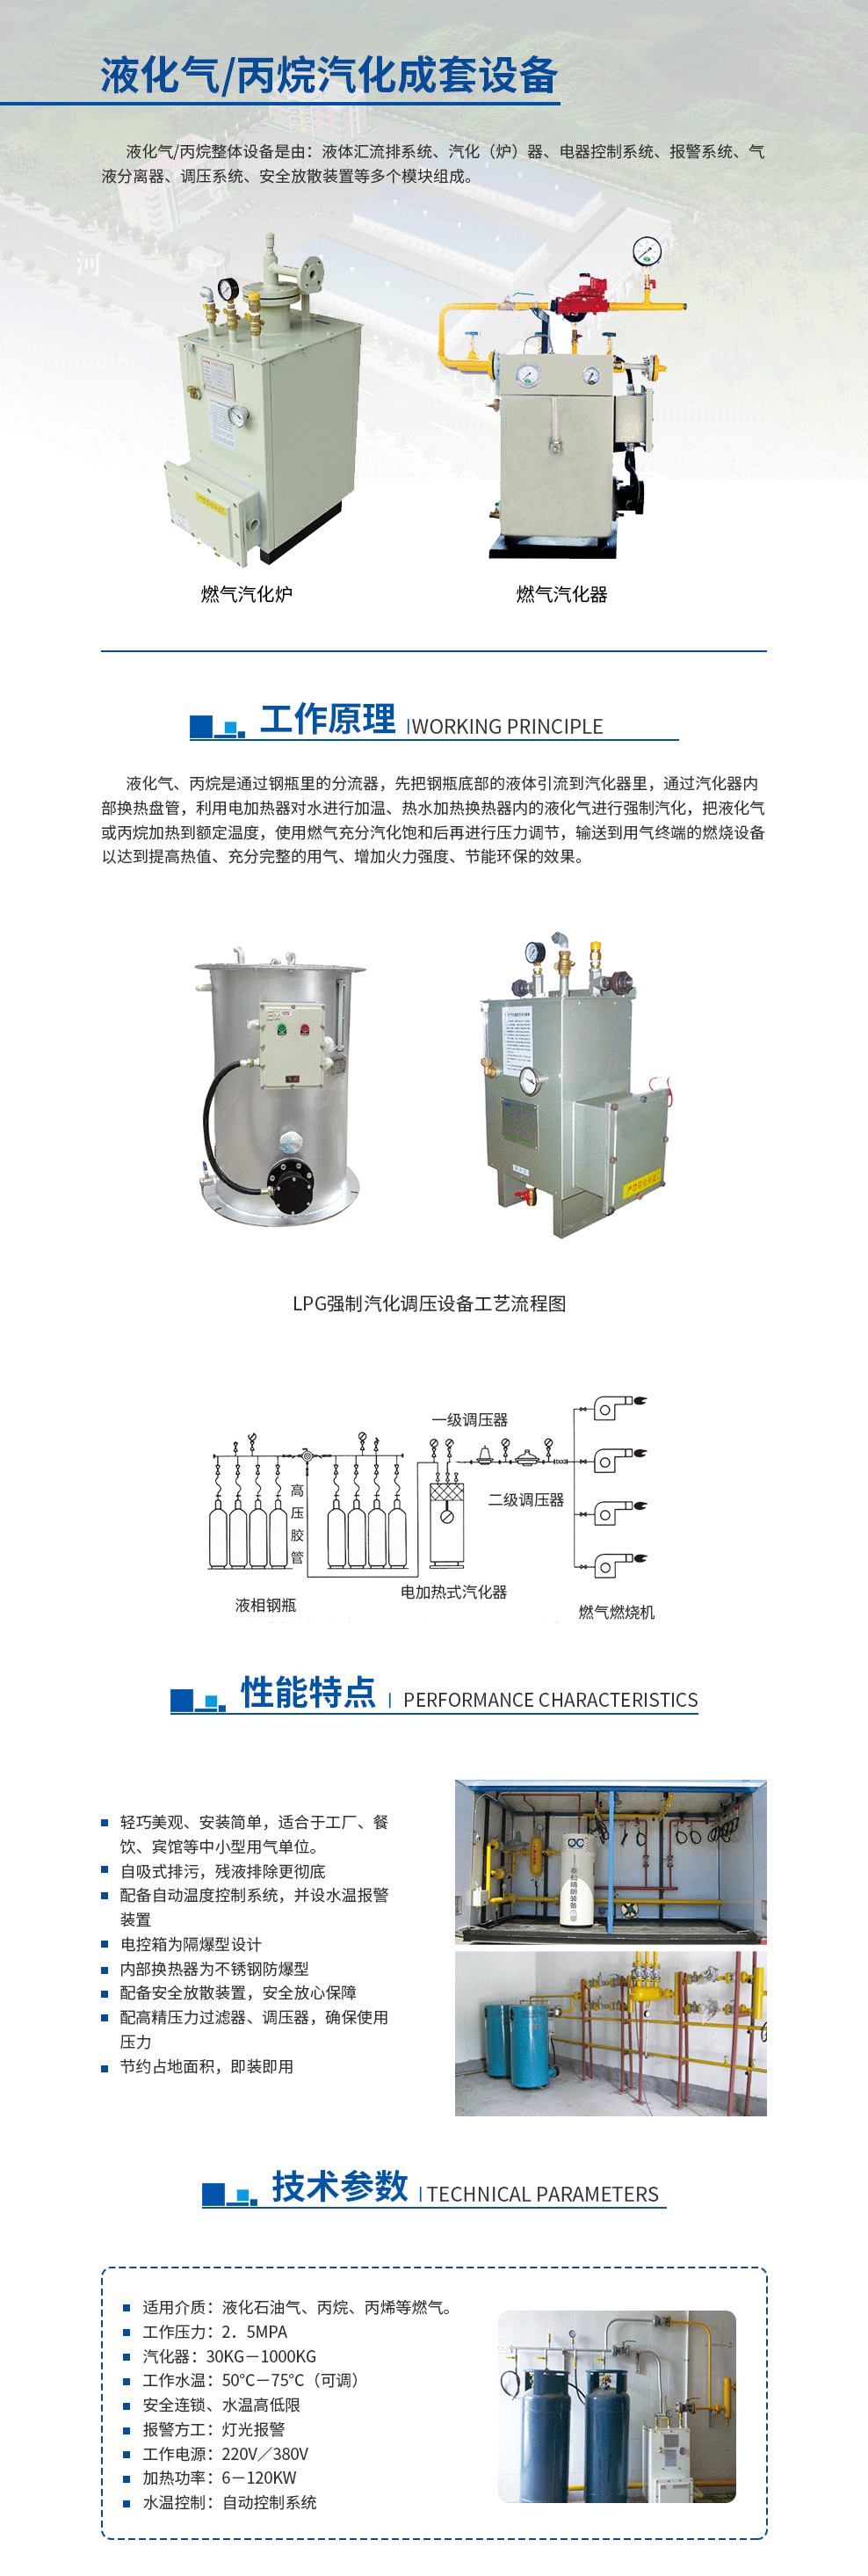 6-液化气丙烷汽化成套设备.png